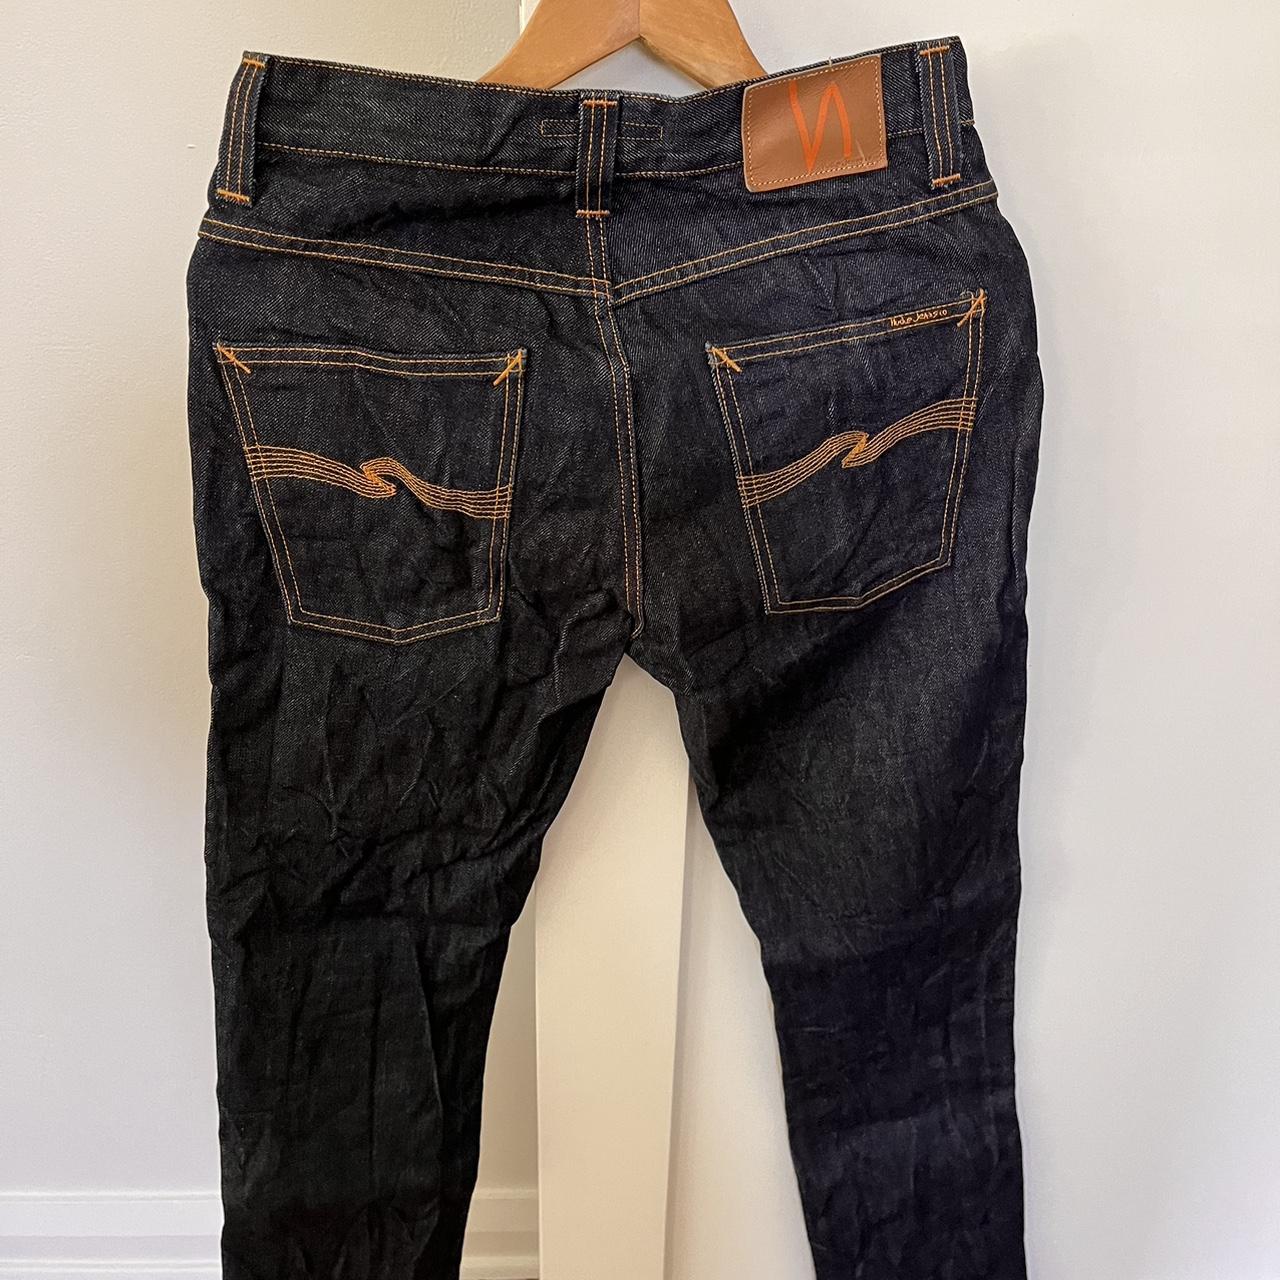 Nudie jeans - Grim Tim Dry 31” width 32”... - Depop